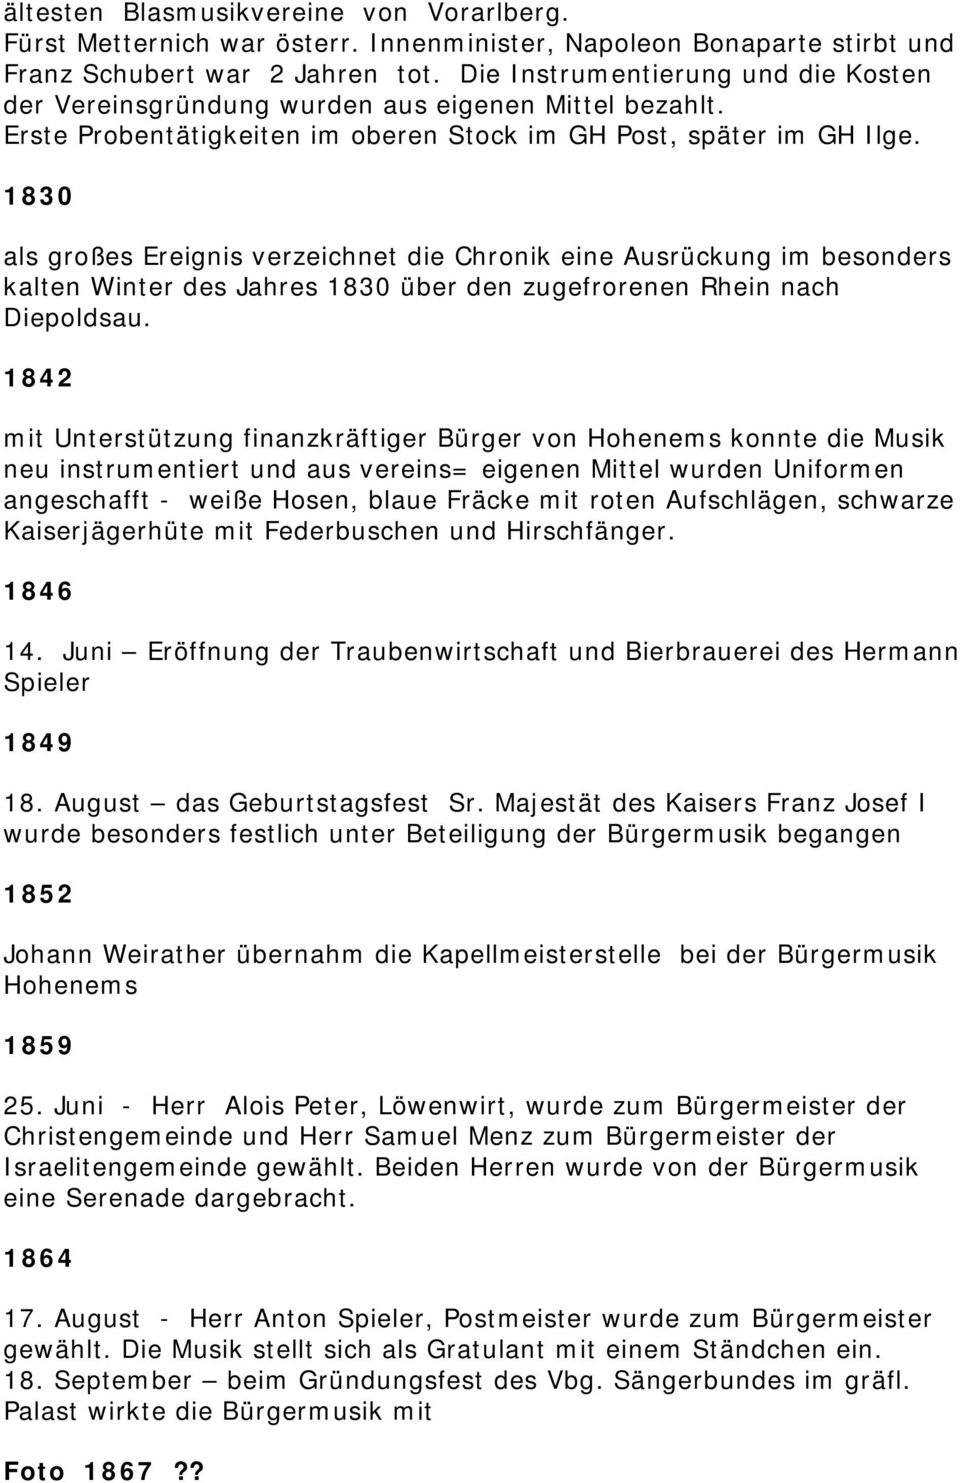 1830 als großes Ereignis verzeichnet die Chronik eine Ausrückung im besonders kalten Winter des Jahres 1830 über den zugefrorenen Rhein nach Diepoldsau.